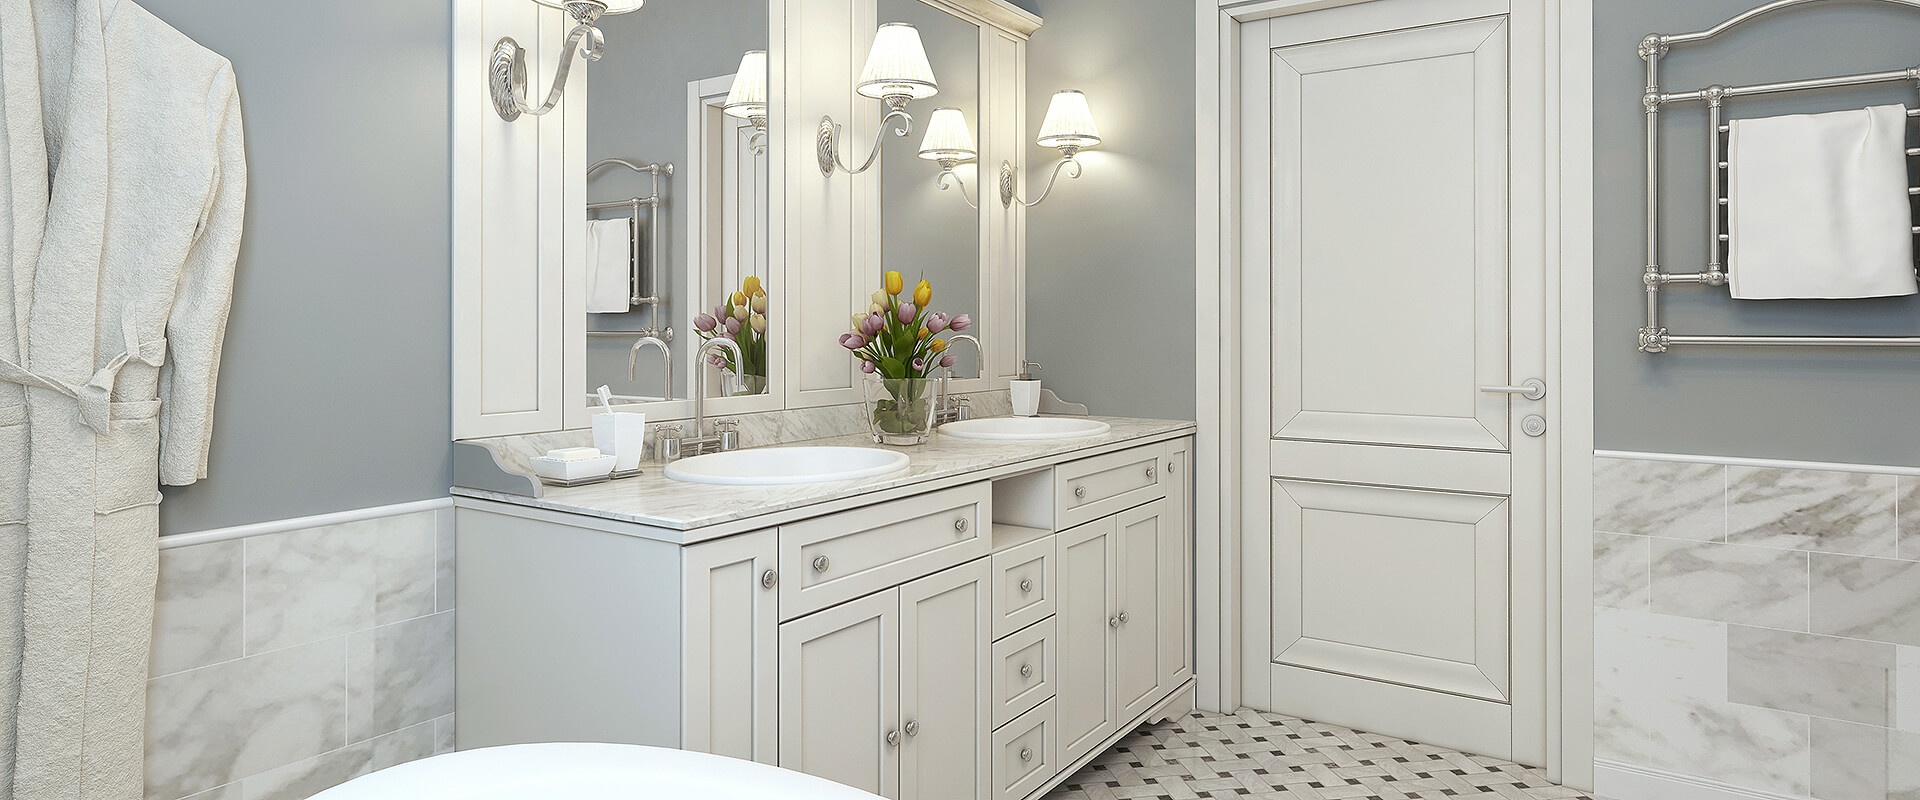 Classic Gray and White Bathroom Design Idea | Ciot